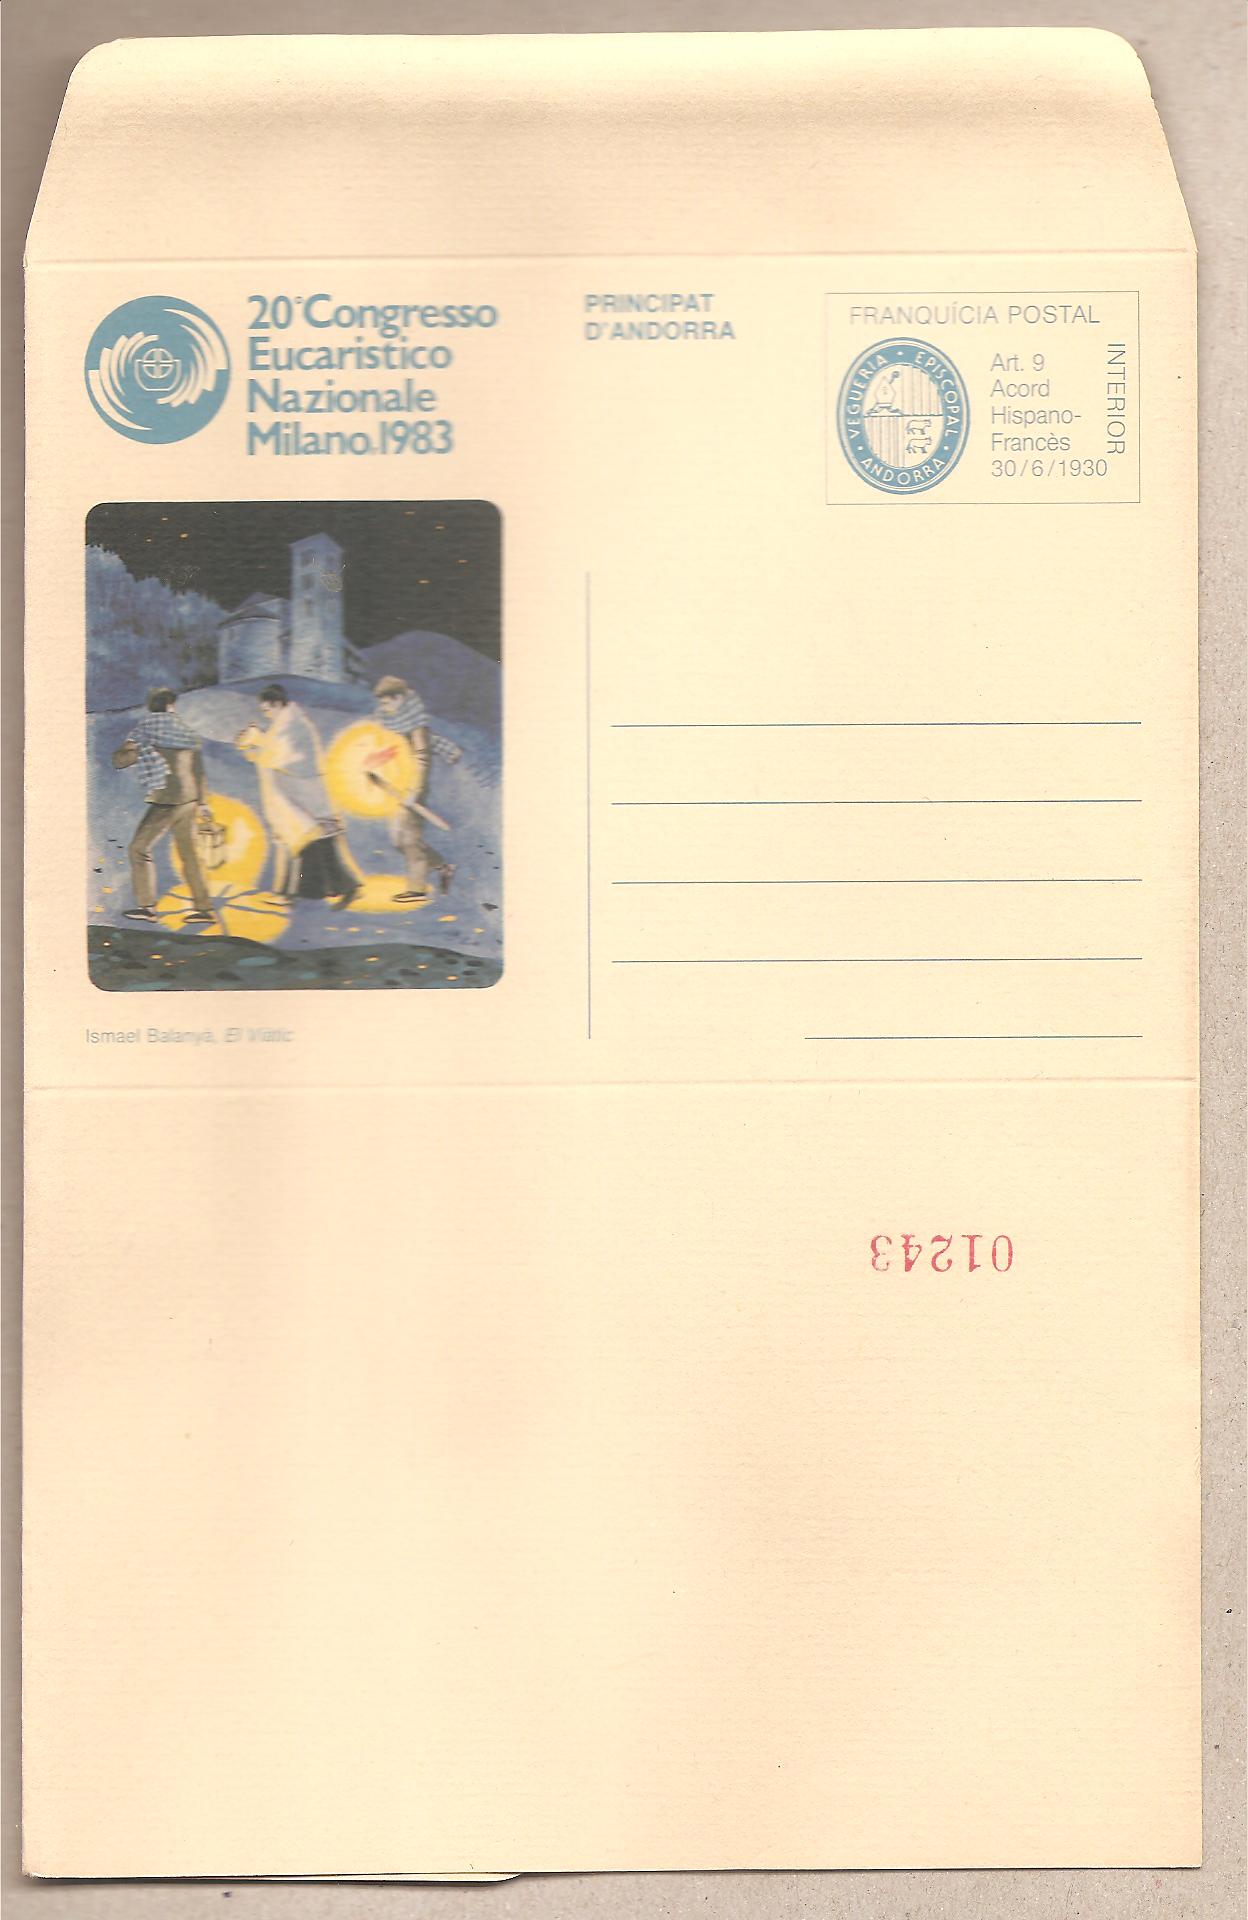 49492 - Andorra - biglietto postale nuova: 20° congresso Eucaristico Nazionale - 1983